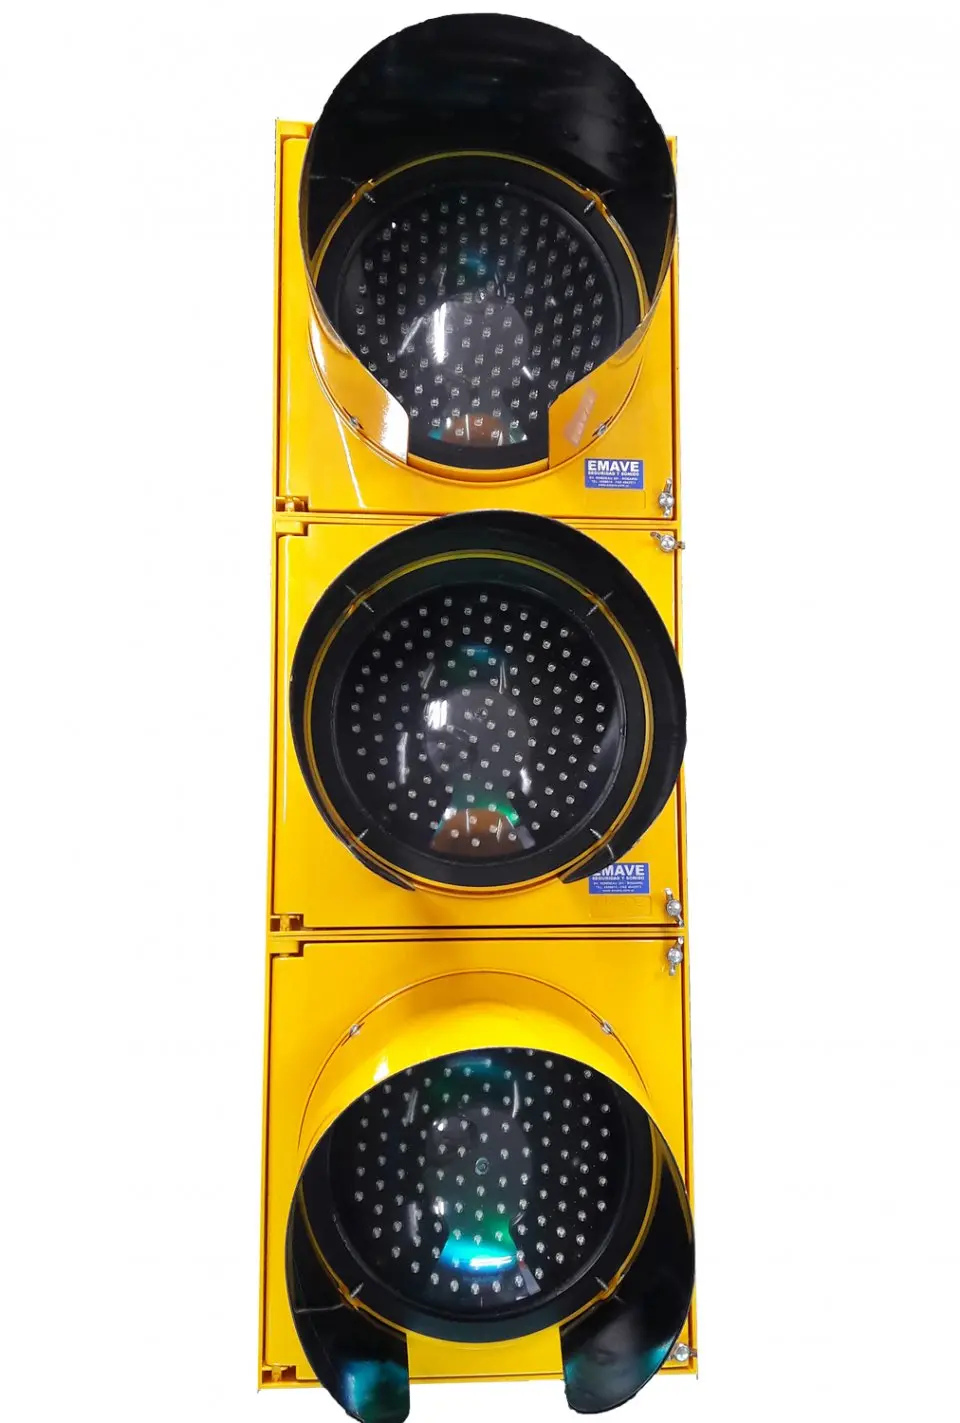 semaforos policarbonato - Qué significa cuando el semáforo está en amarillo